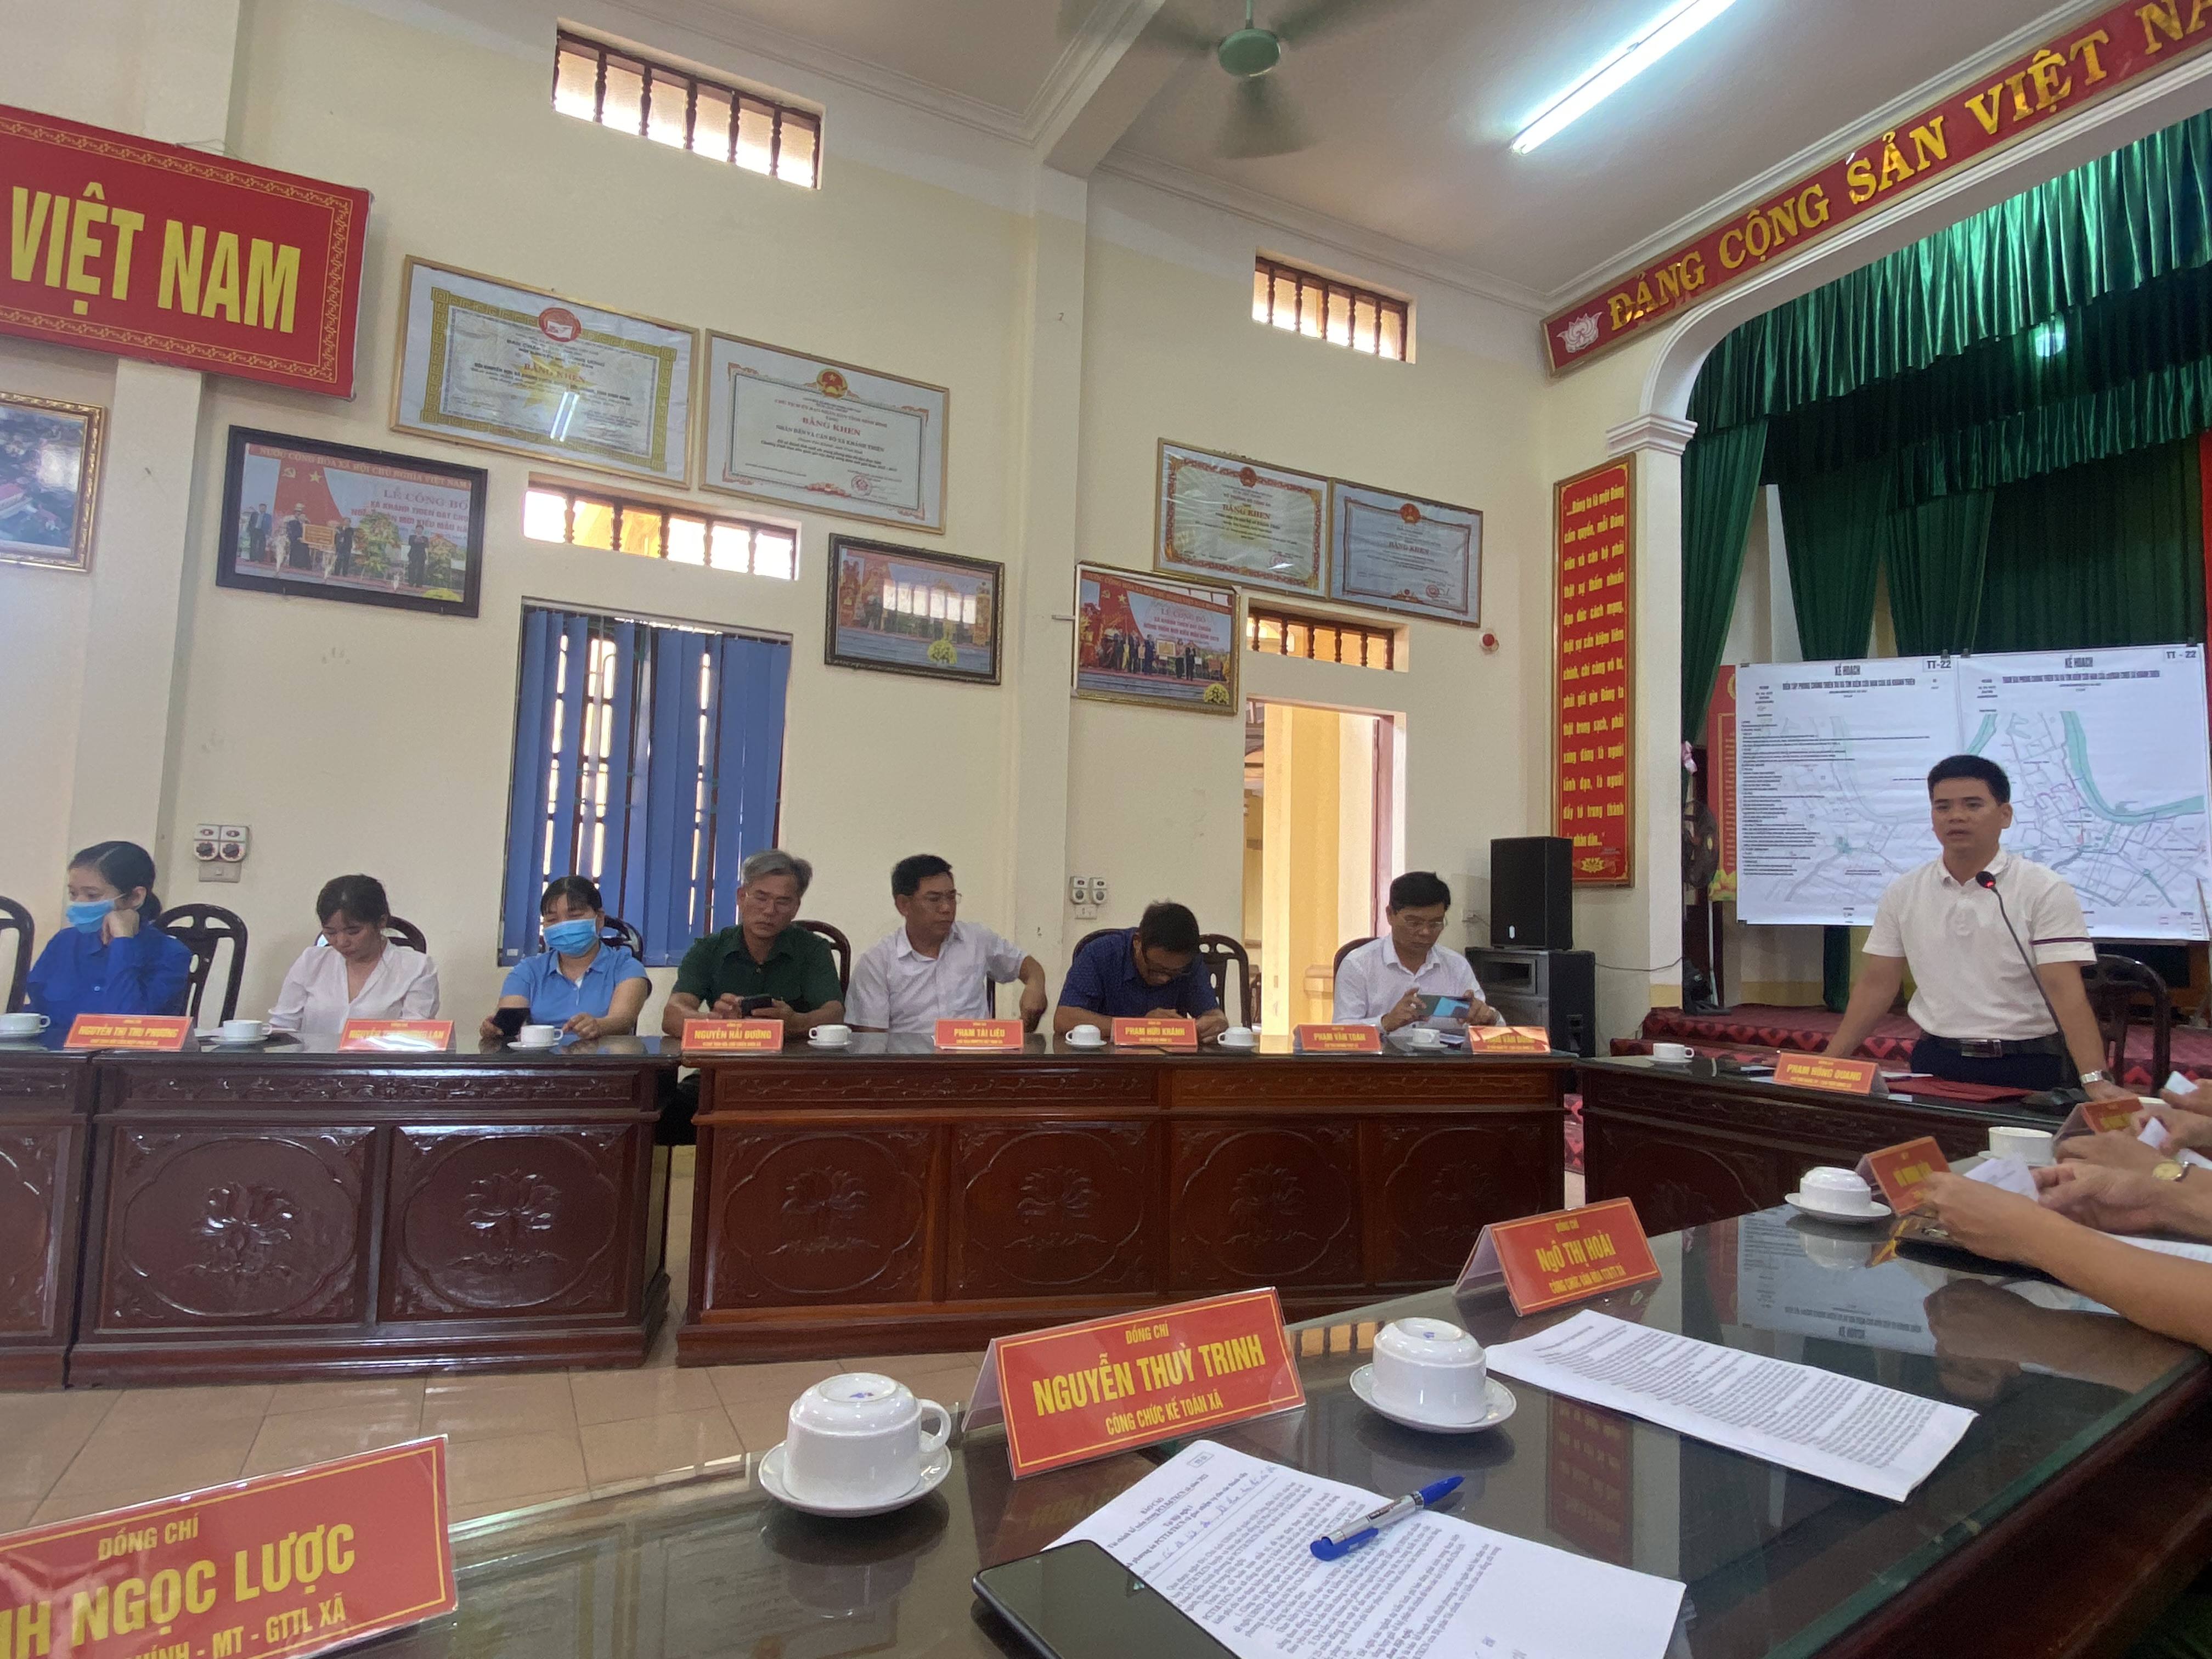 Hội nghị diễn tập PCTT & TKCN cụm 5 xã, tại Nhà văn hóa xã Khánh Thiện